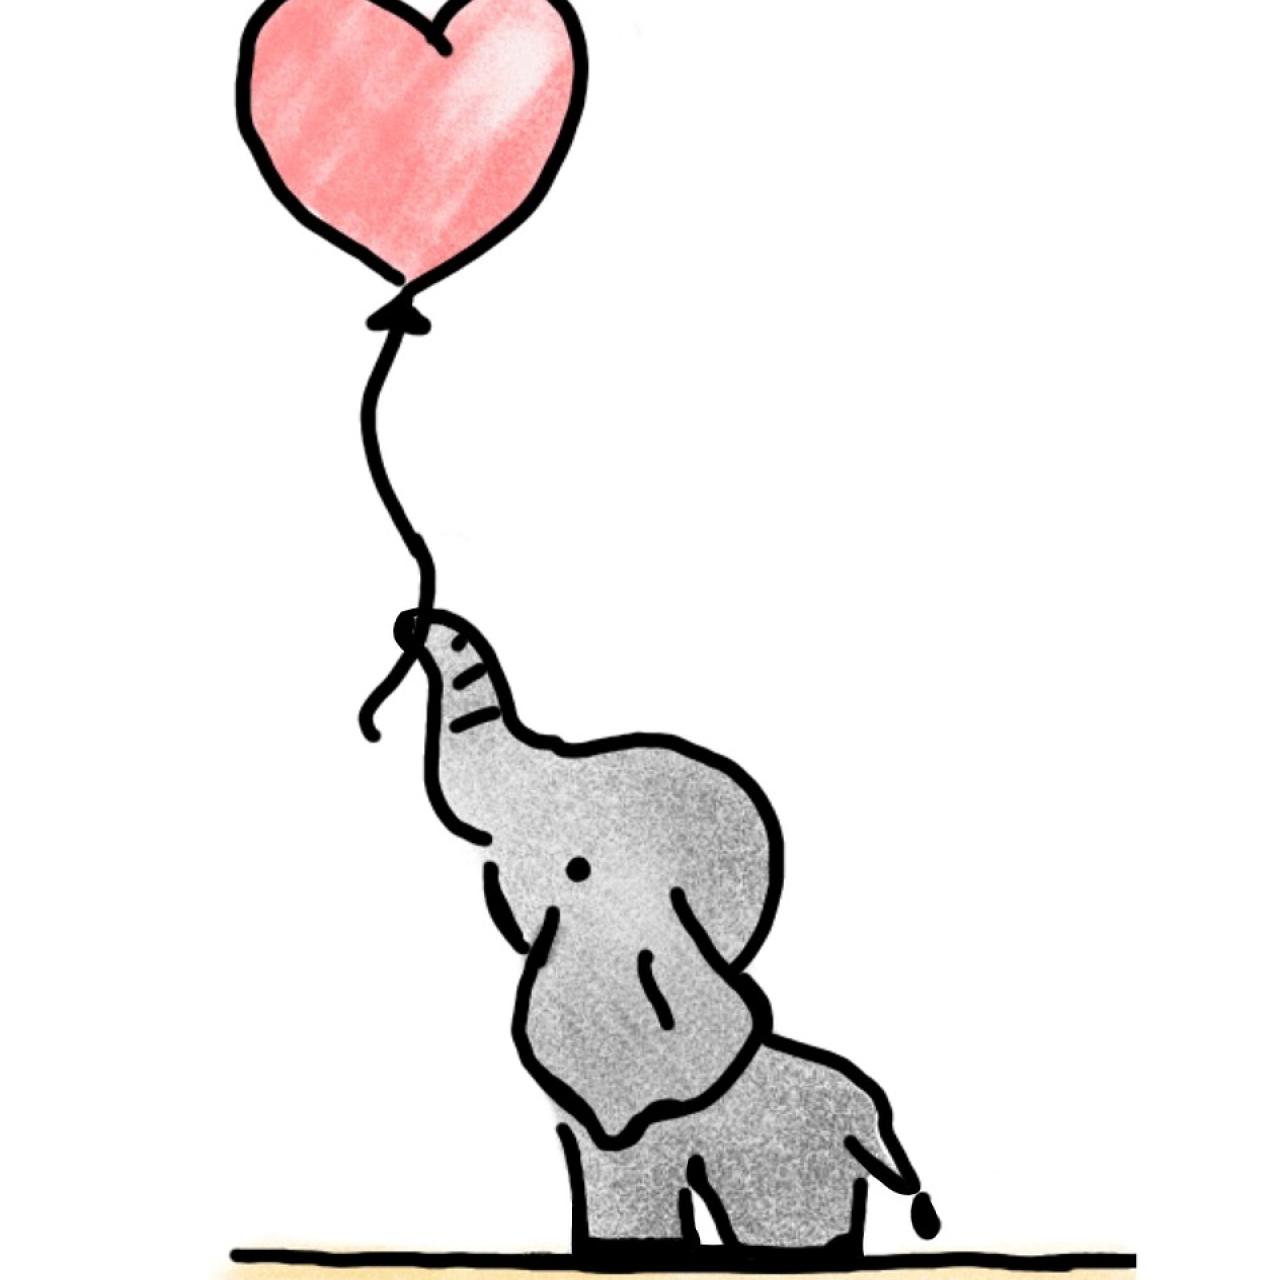 Elefant mit Herz. Bild von Jan-Mikael Stjernberg auf Pixabay